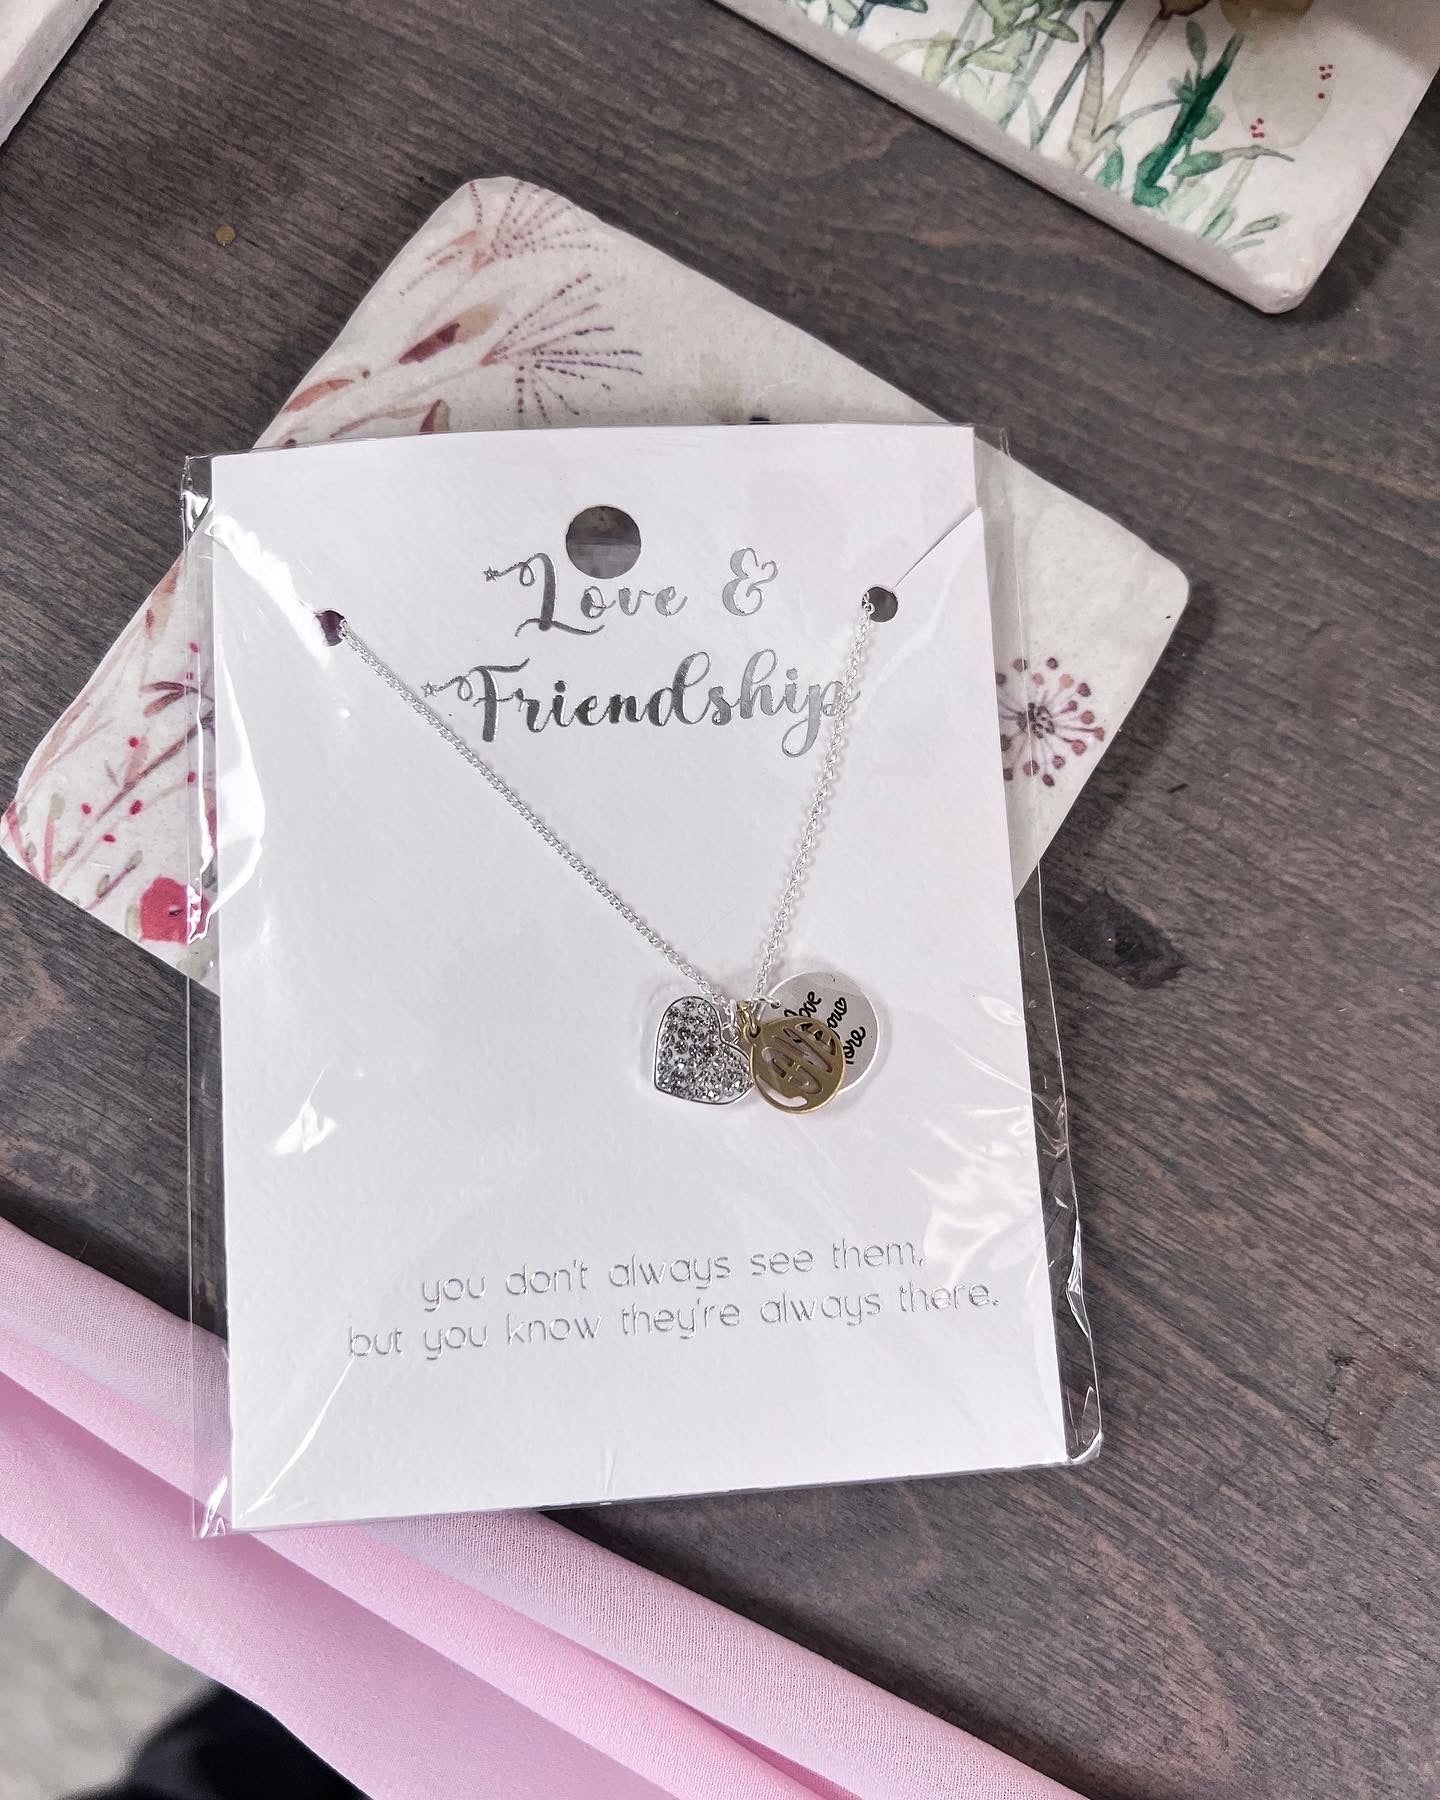 Love! & Friendship! Necklaces